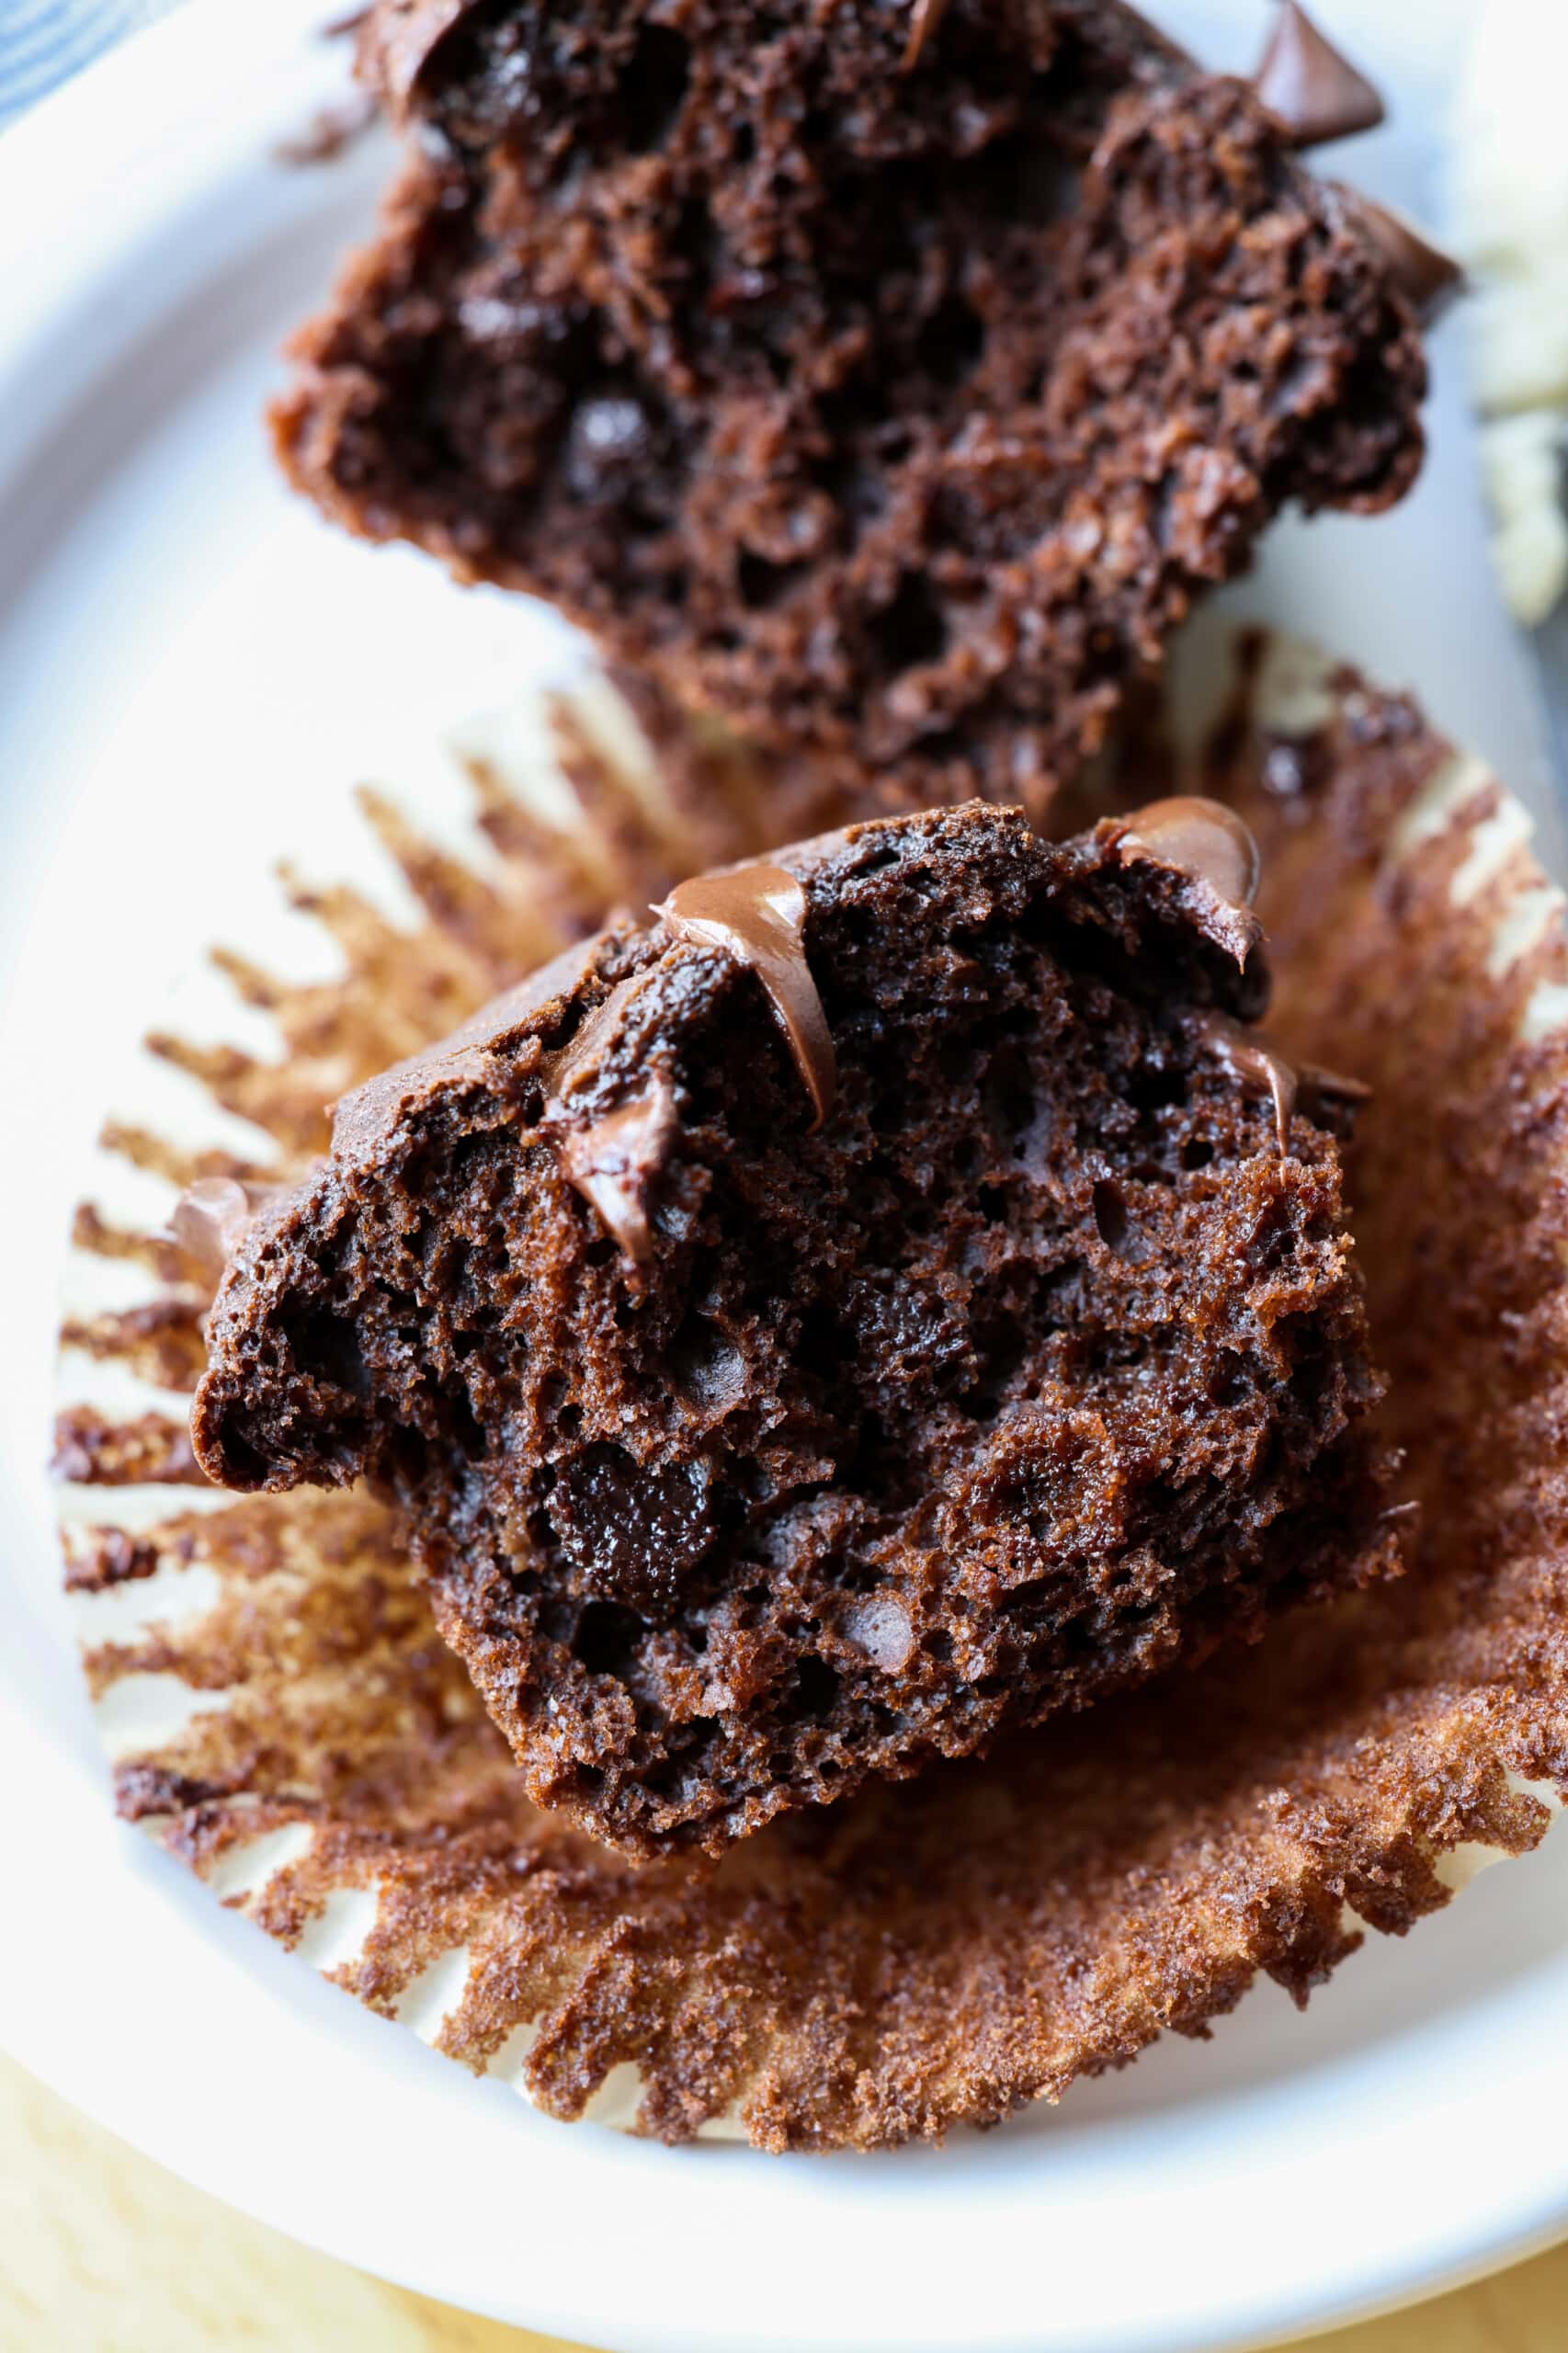 Muffin au chocolat coupé en deux sur une doublure de cupcake